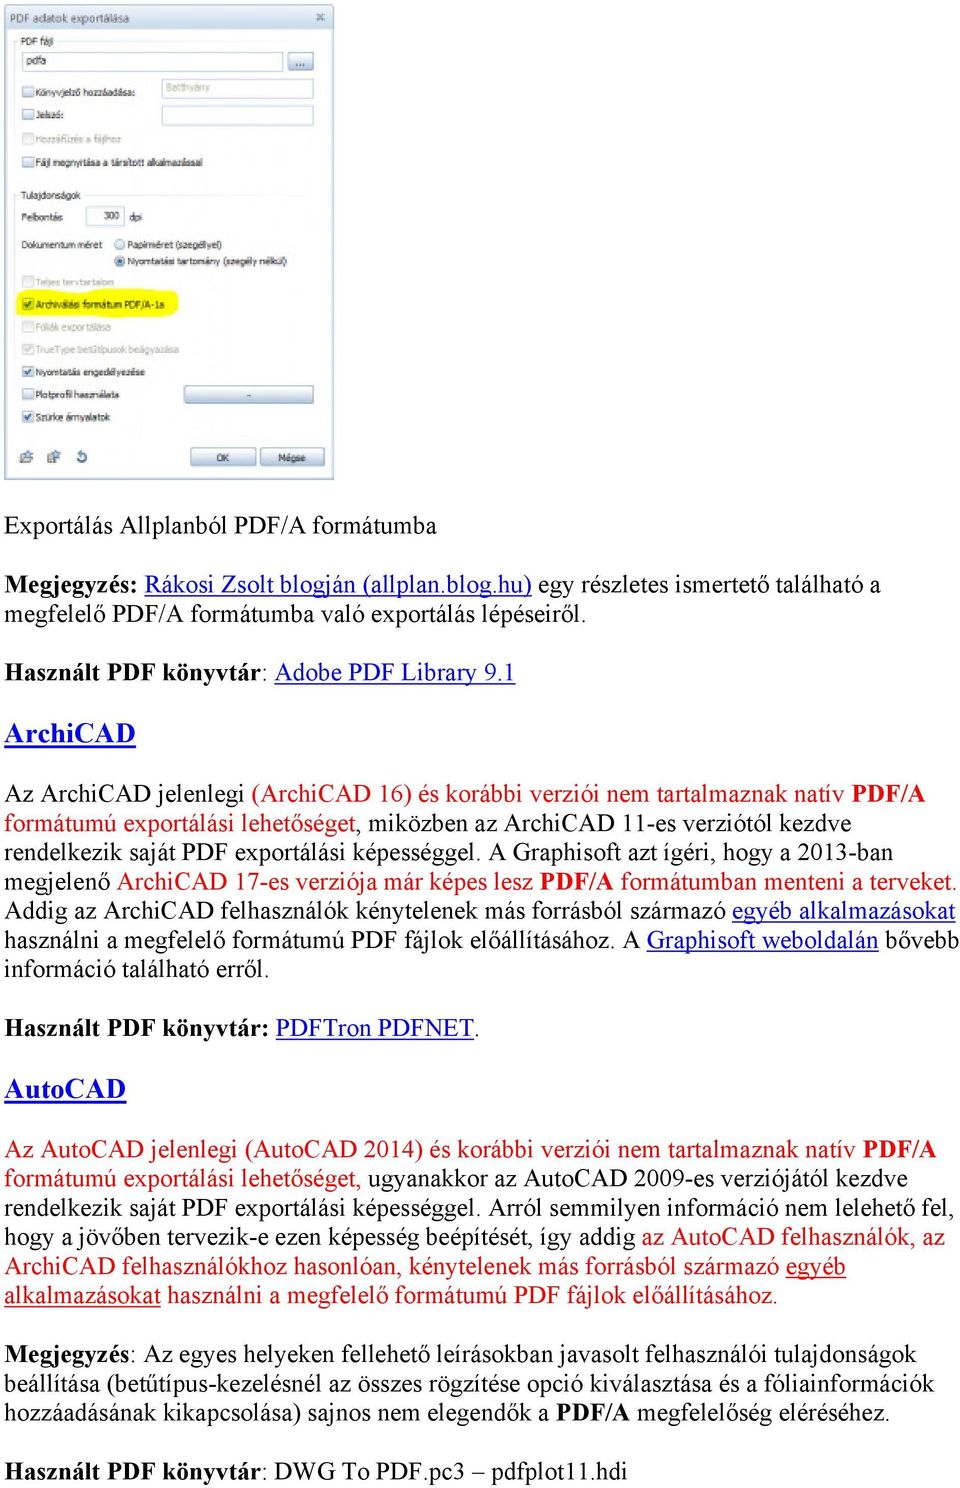 1 ArchiCAD Az ArchiCAD jelenlegi (ArchiCAD 16) és korábbi verziói nem tartalmaznak natív PDF/A formátumú exportálási lehetőséget, miközben az ArchiCAD 11-es verziótól kezdve rendelkezik saját PDF